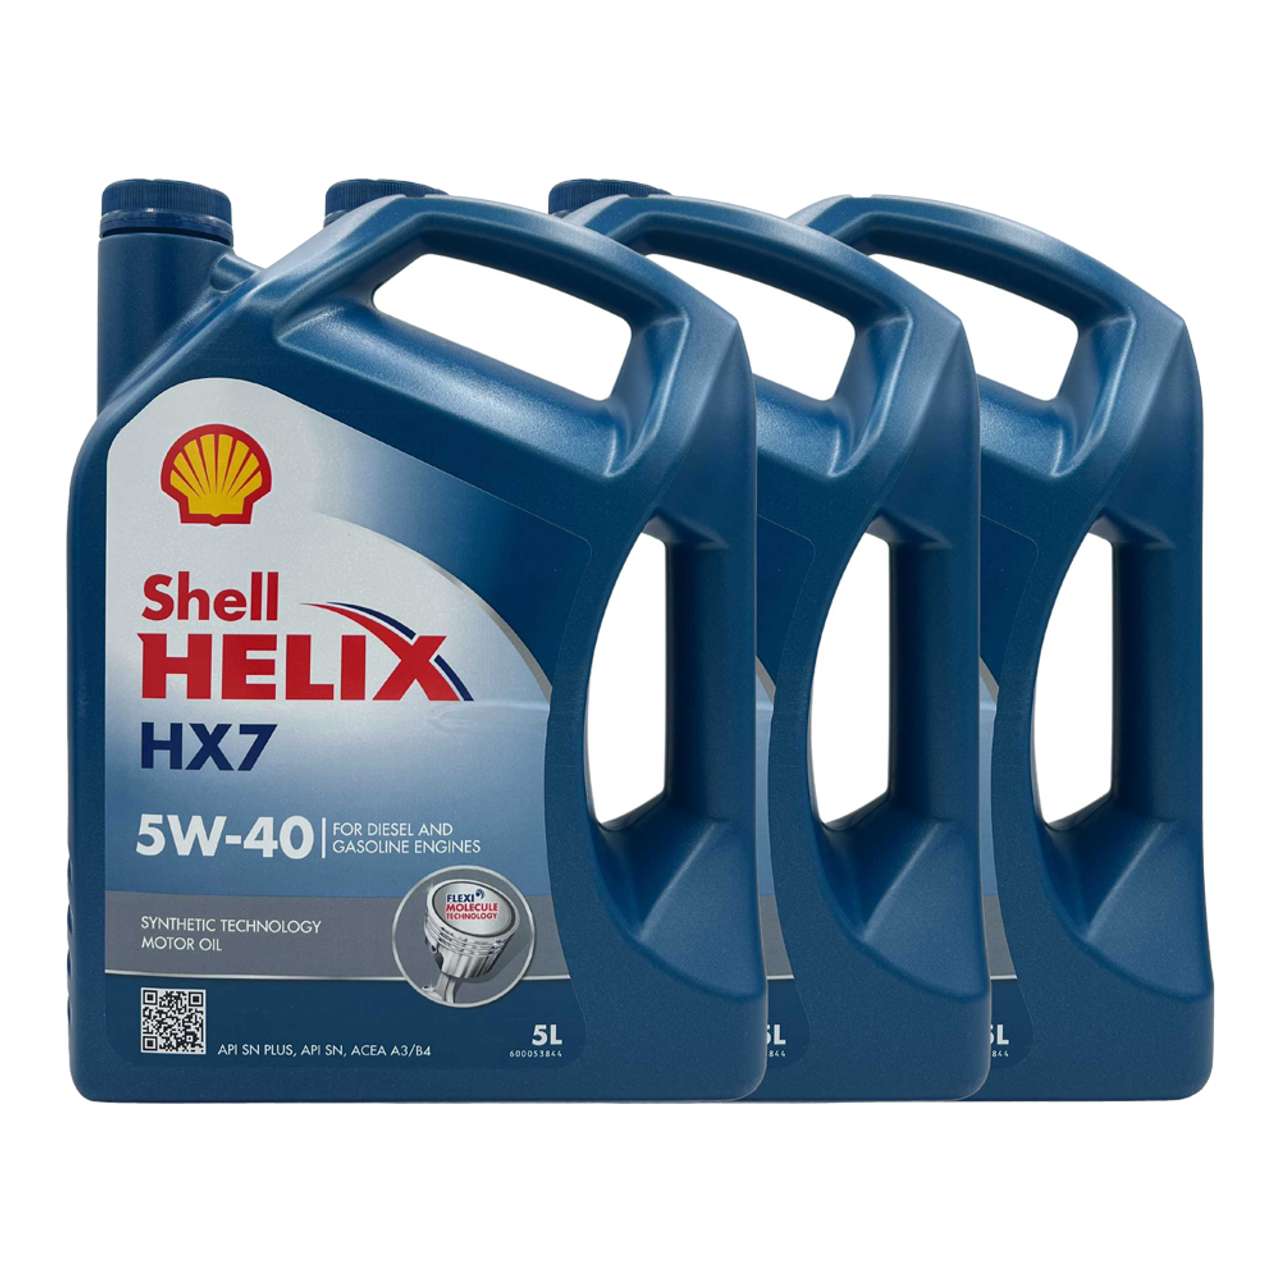 Shell Helix HX7 5W-40 3x5 Liter